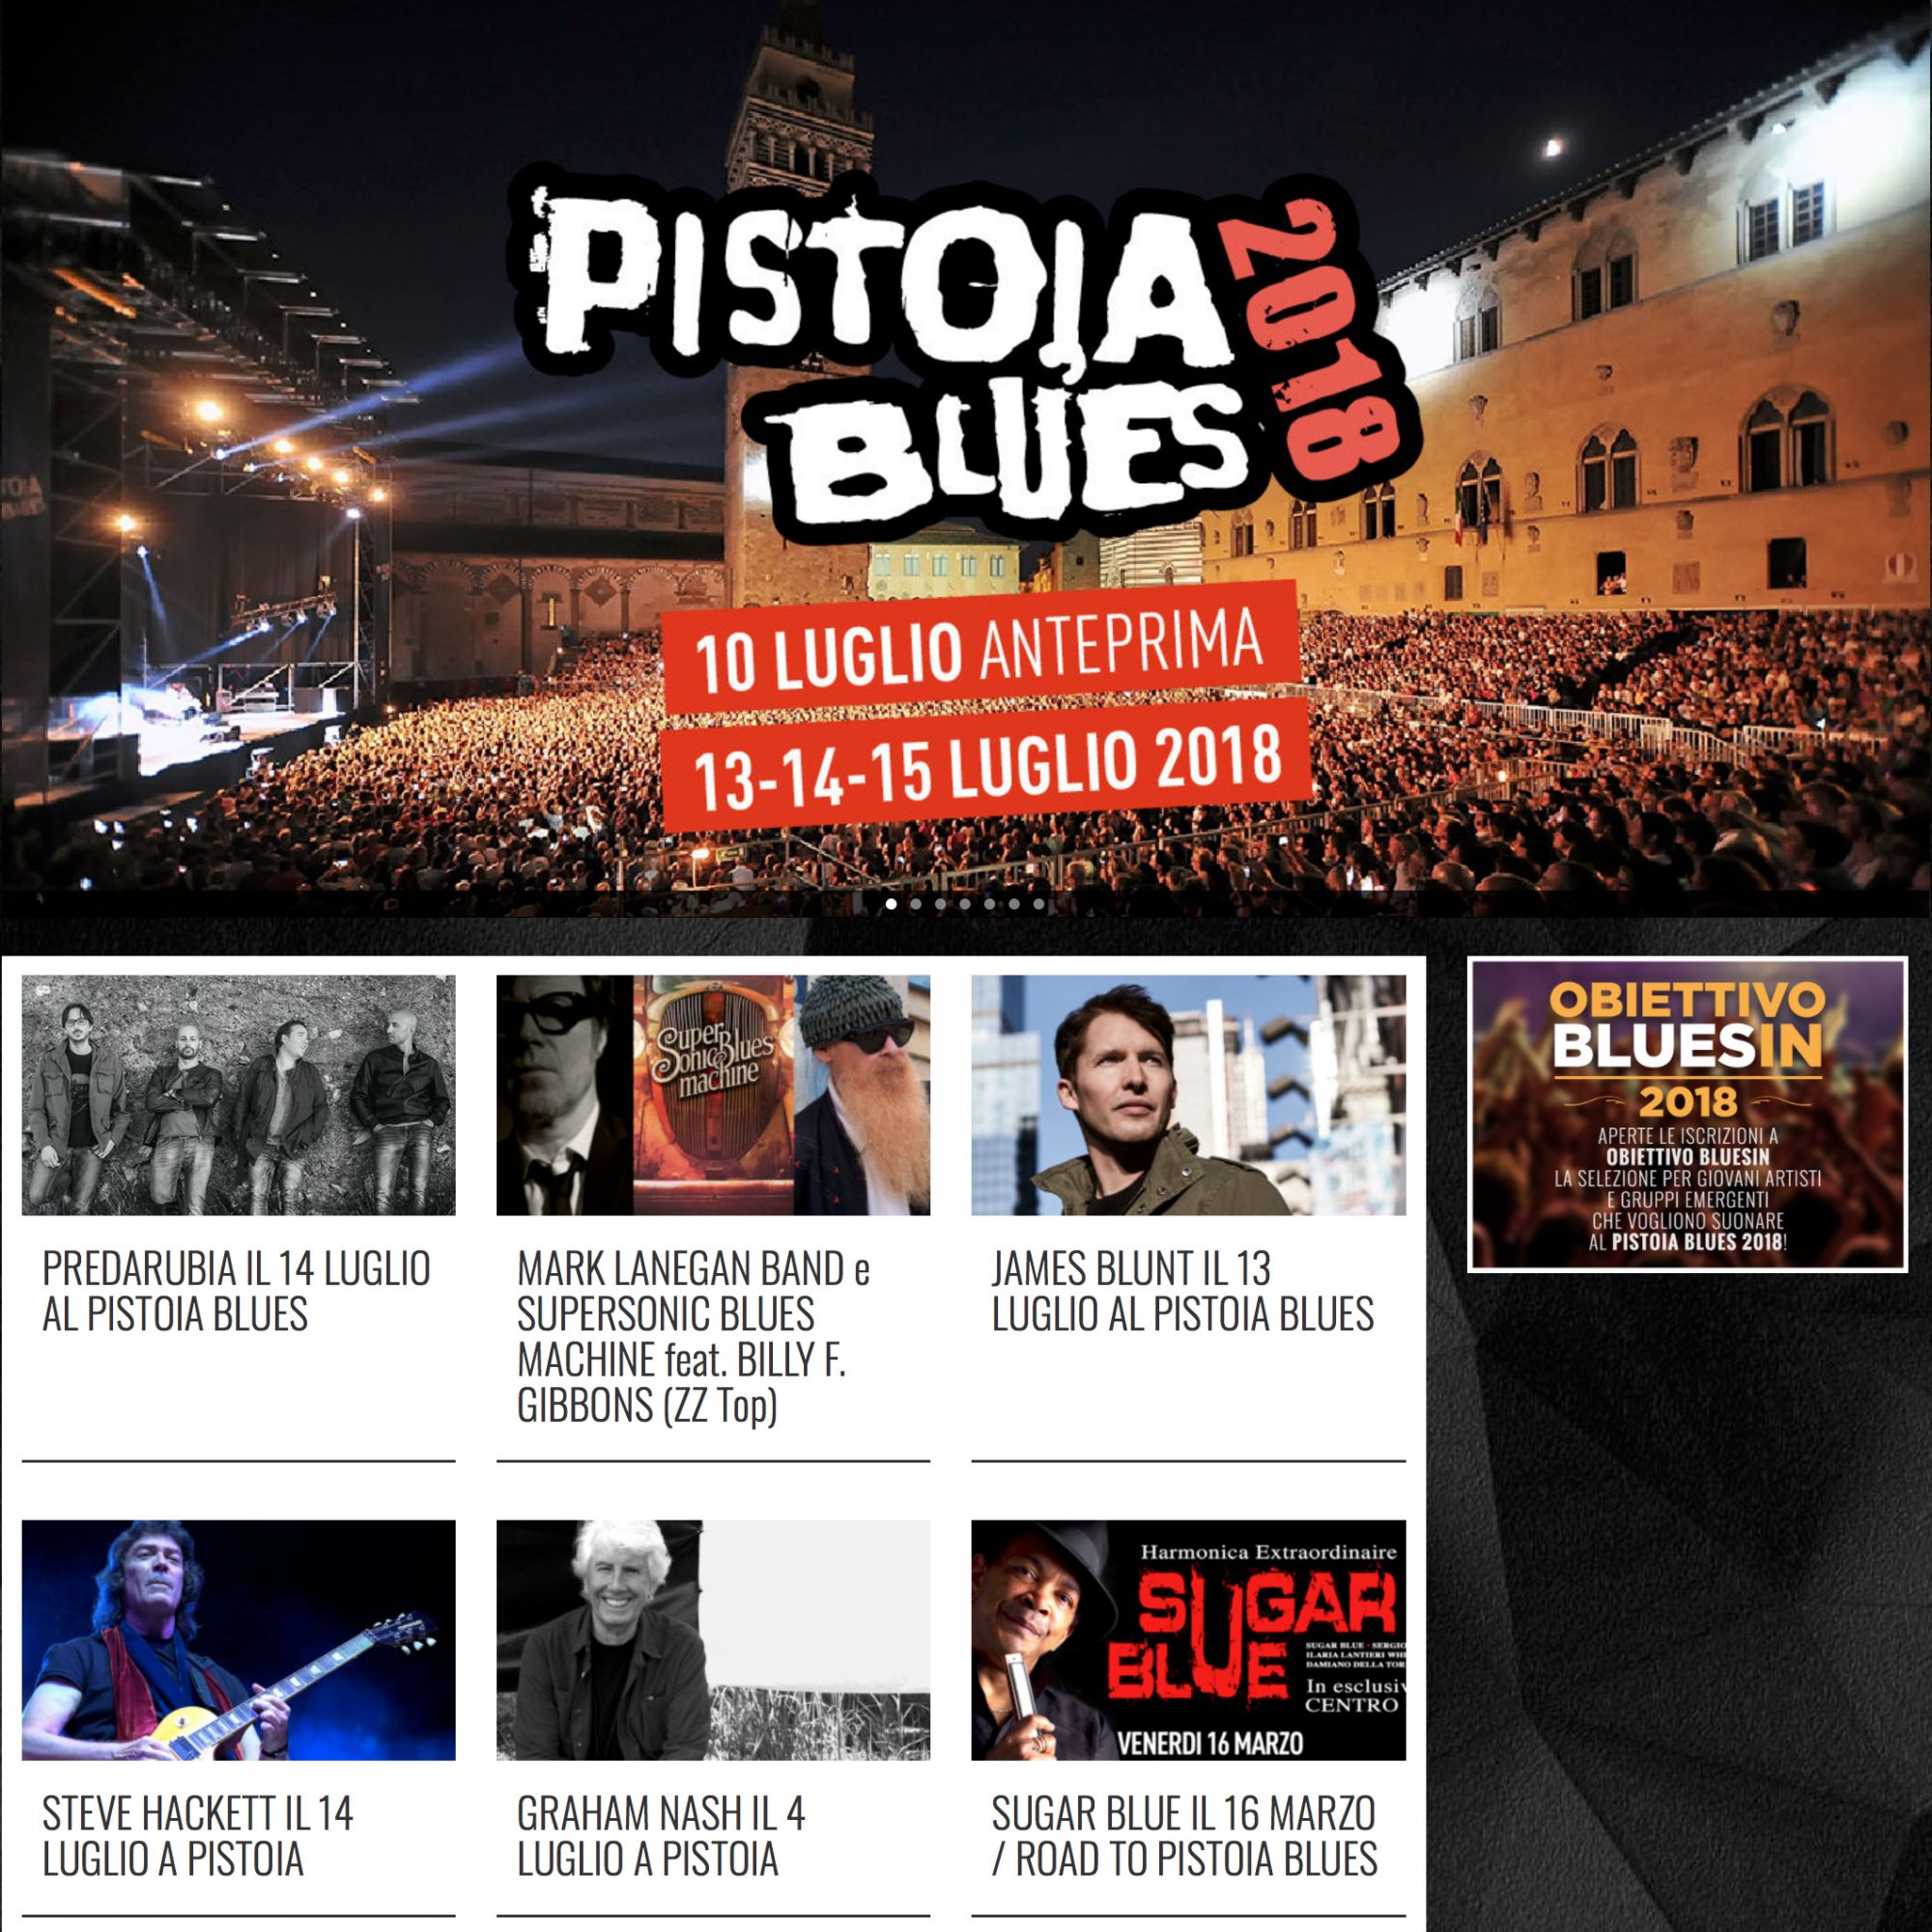 La band lucchese Predarubia ospite al Pistoia Blues Festival